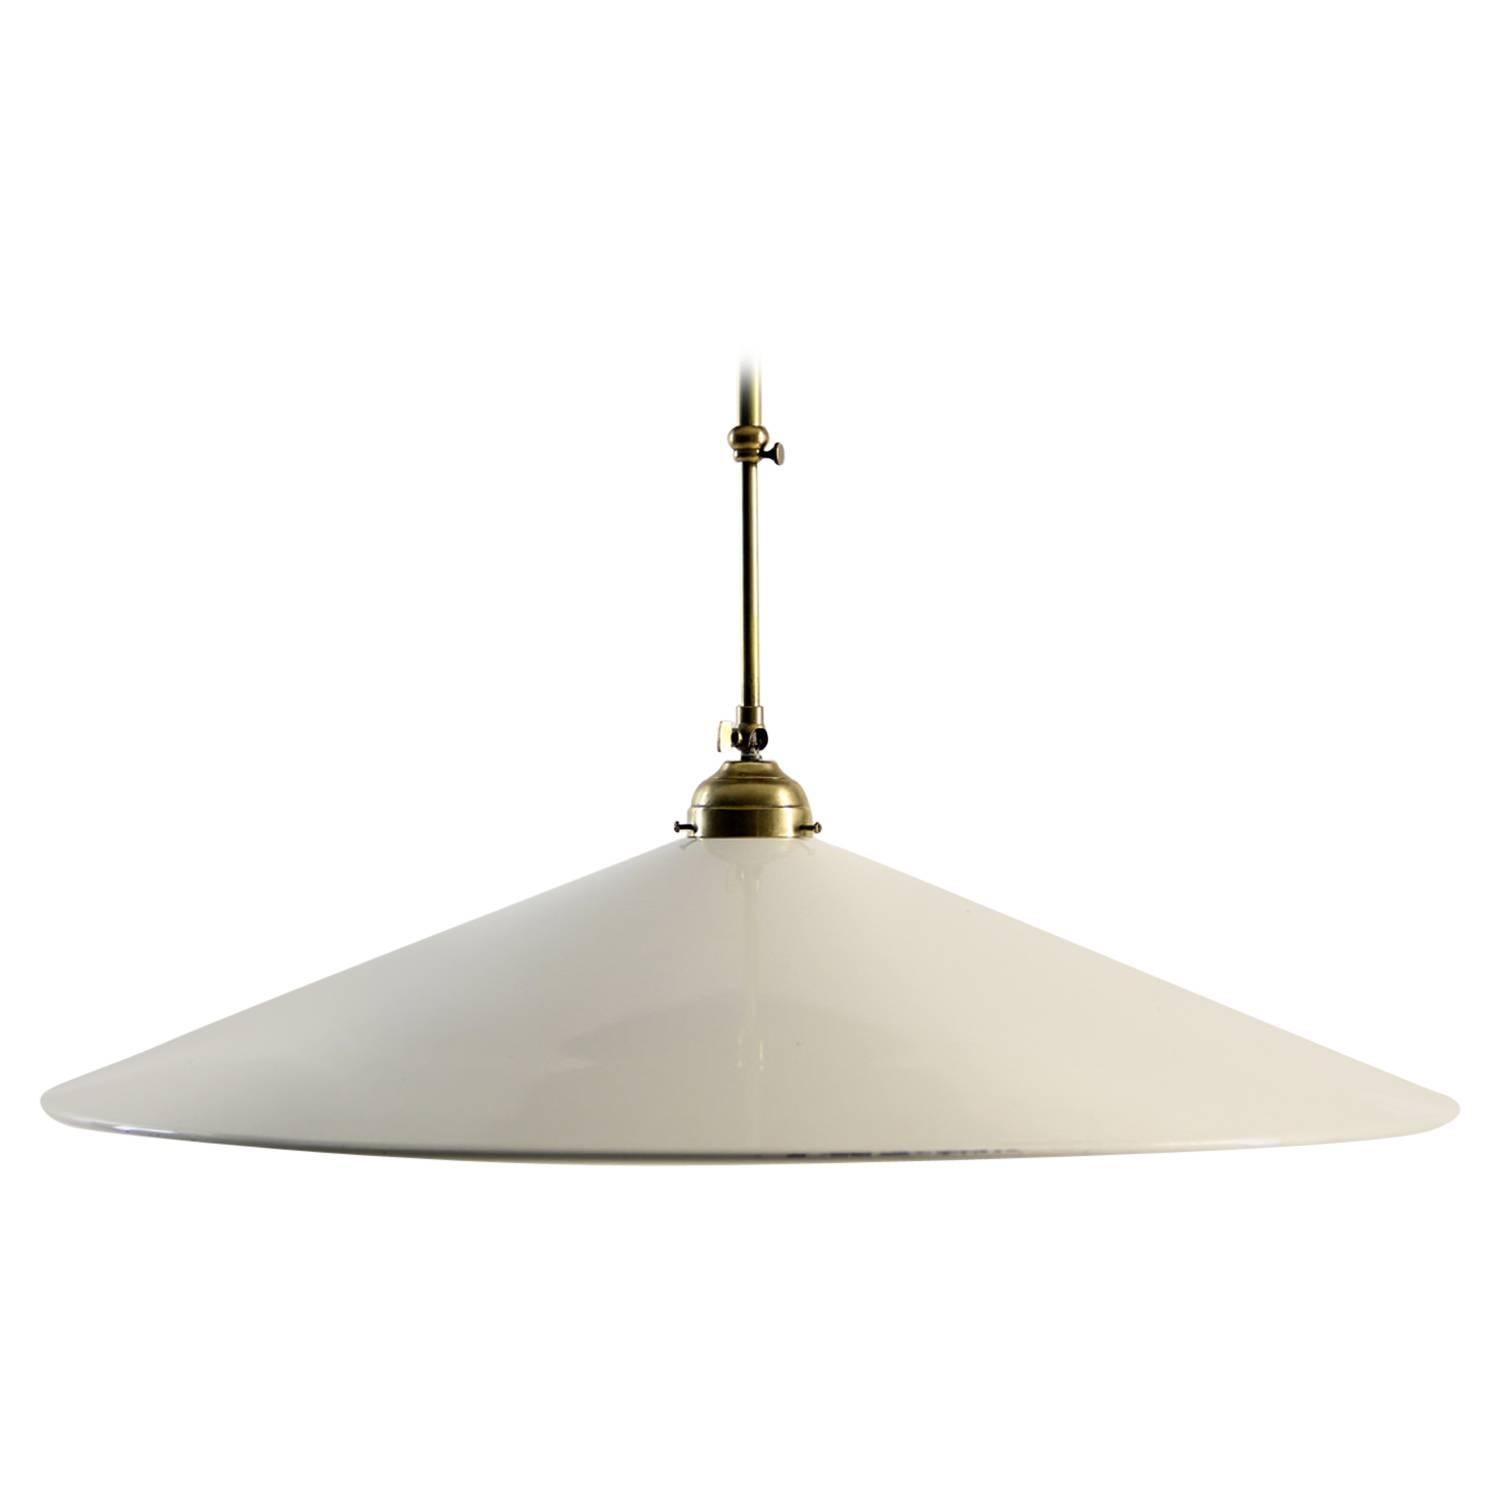 Italian Modernist Pendant Lamp in the Style of Stilnovo For Sale